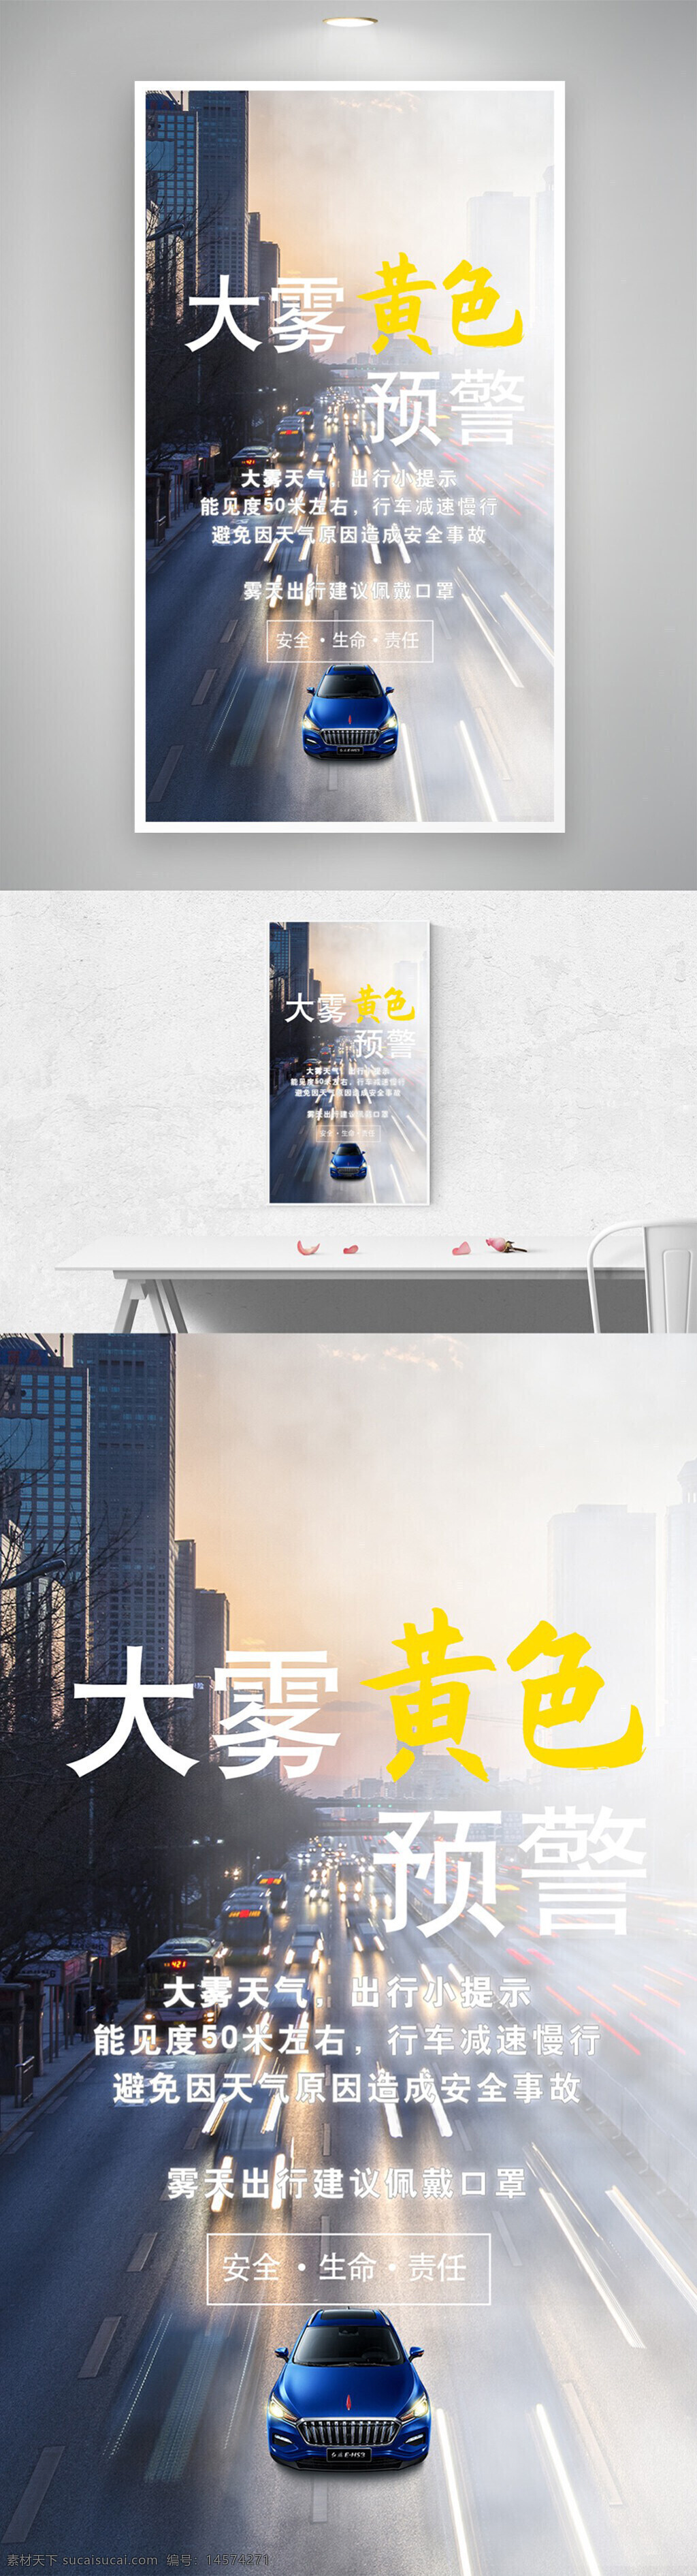 大雾 天气 黄色 预警 注意 安全 汽车 设计 广告设计 其他